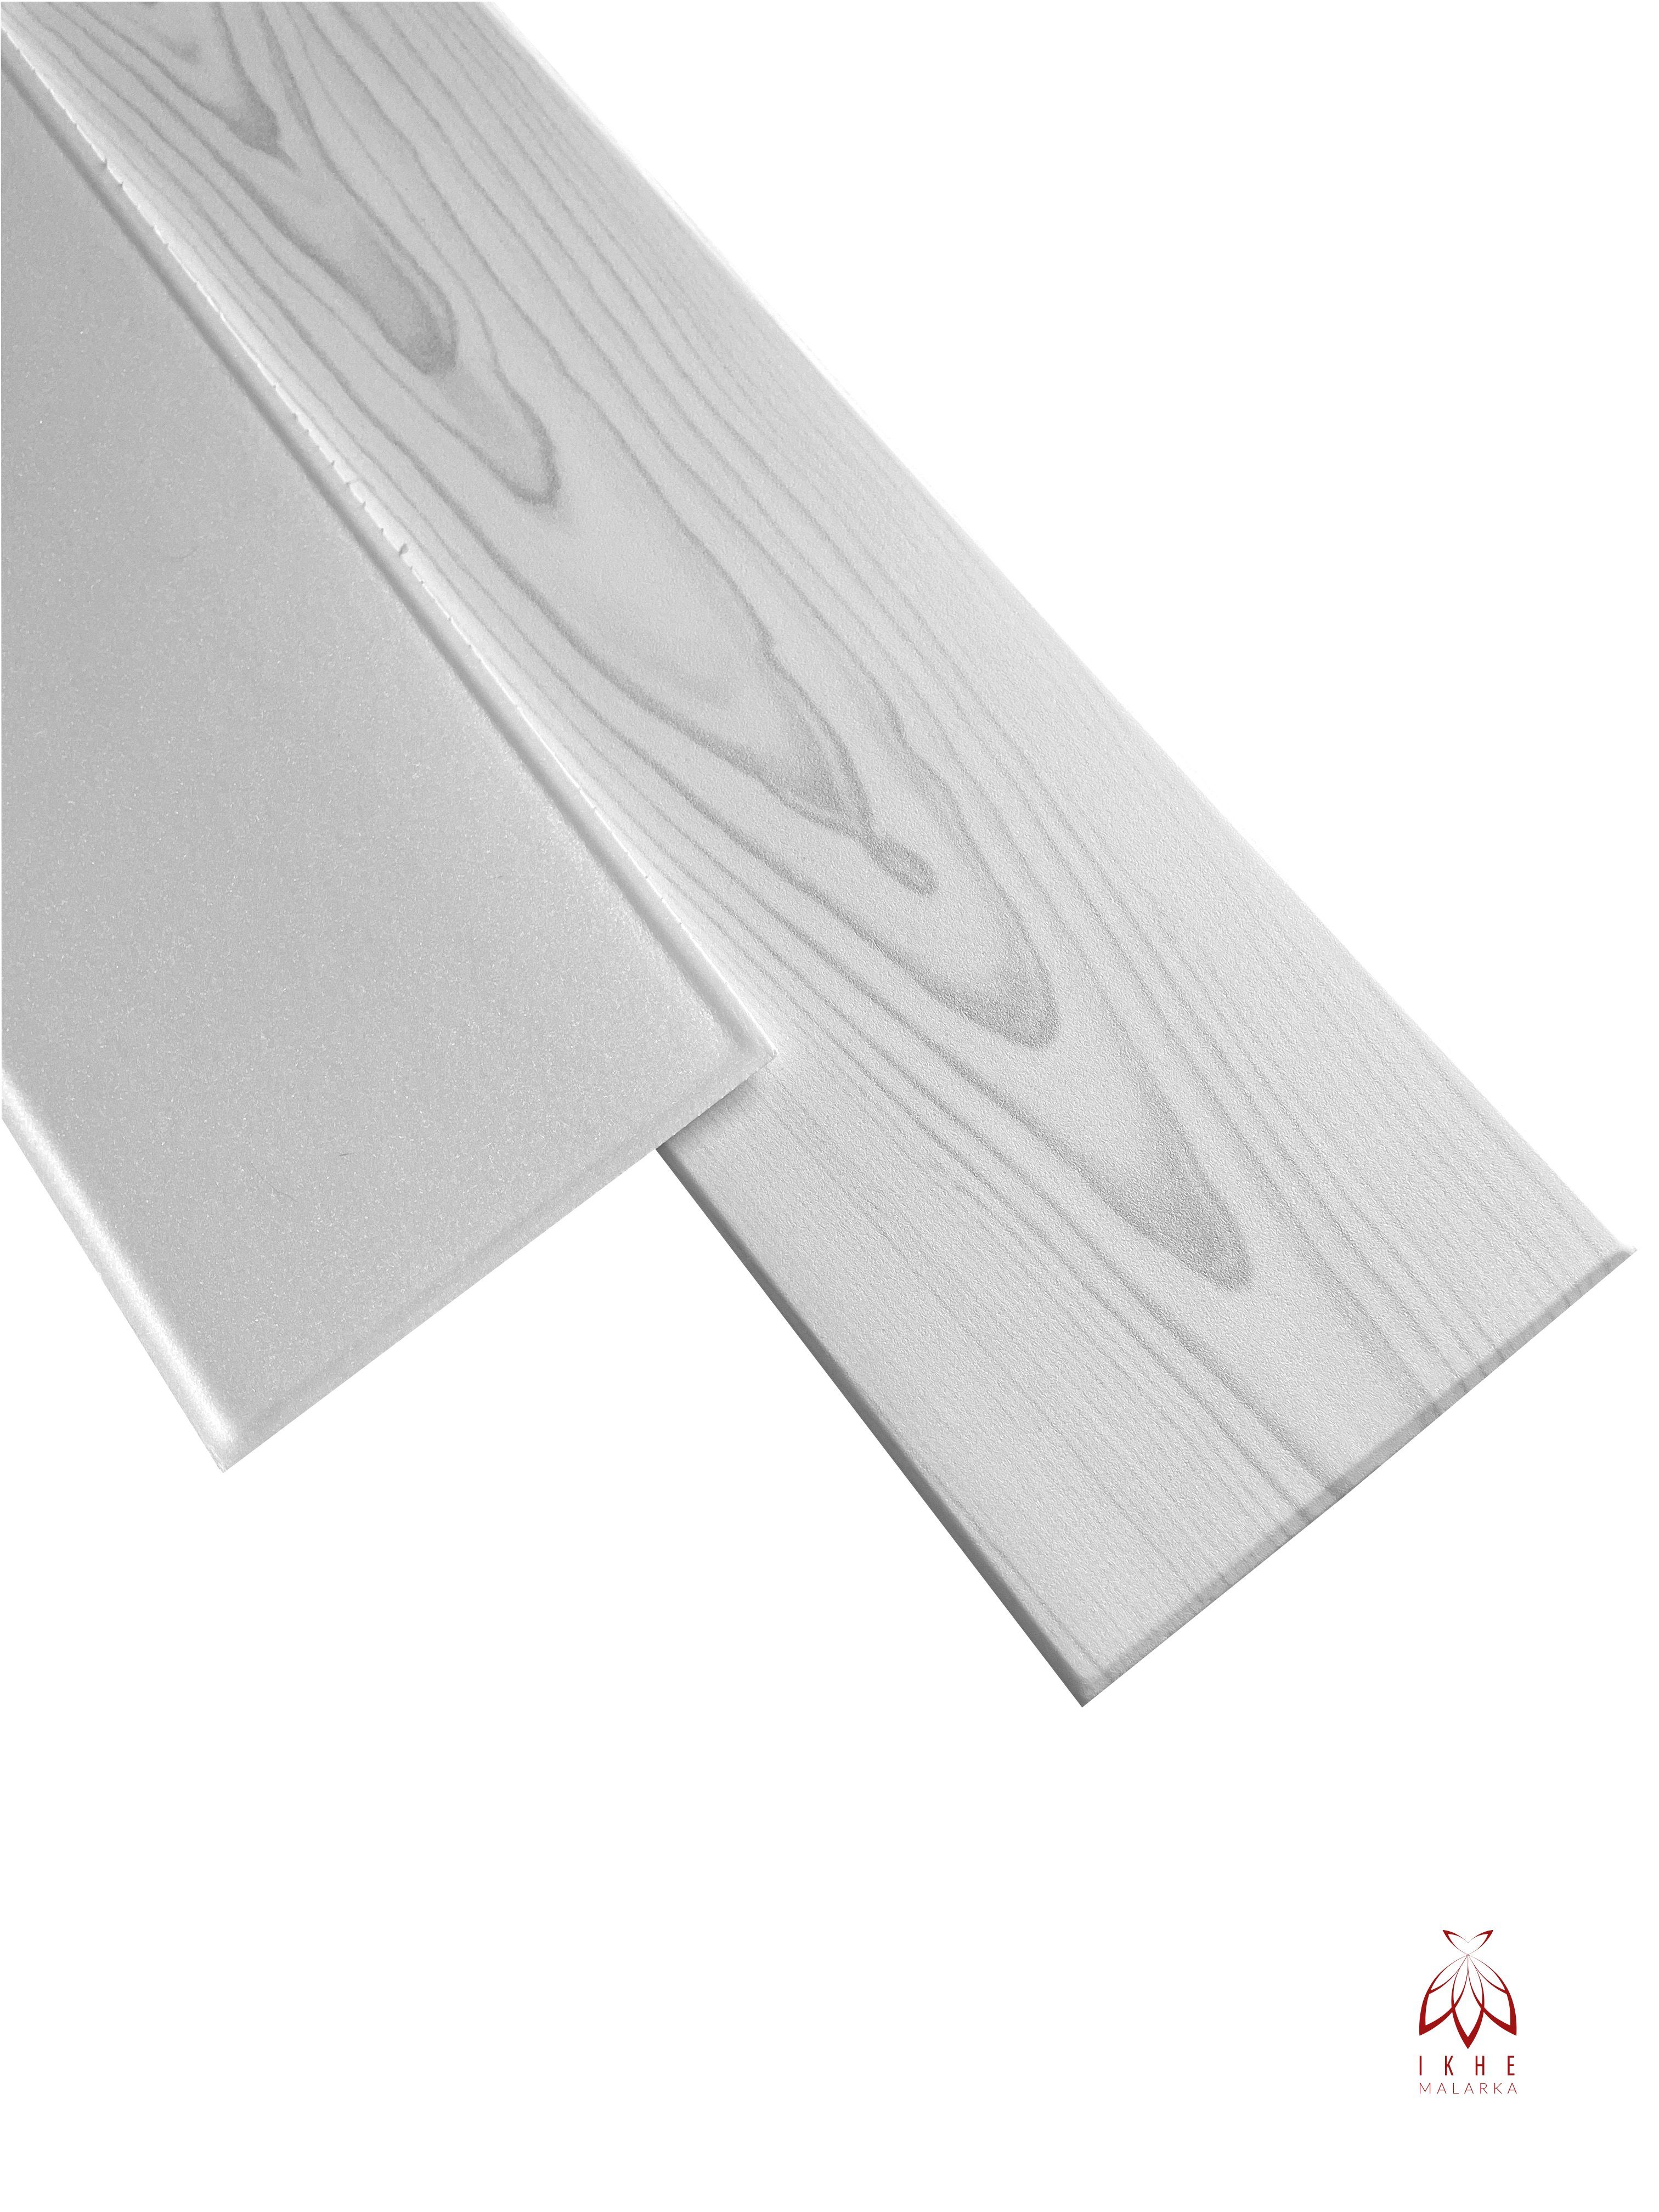 IKHEMalarka 3D Wandpaneel »20qm / 120 Stück Wandpaneele Deckenpaneele 3mm  stärke«, BxL: 16,70x100,00 cm online kaufen | OTTO